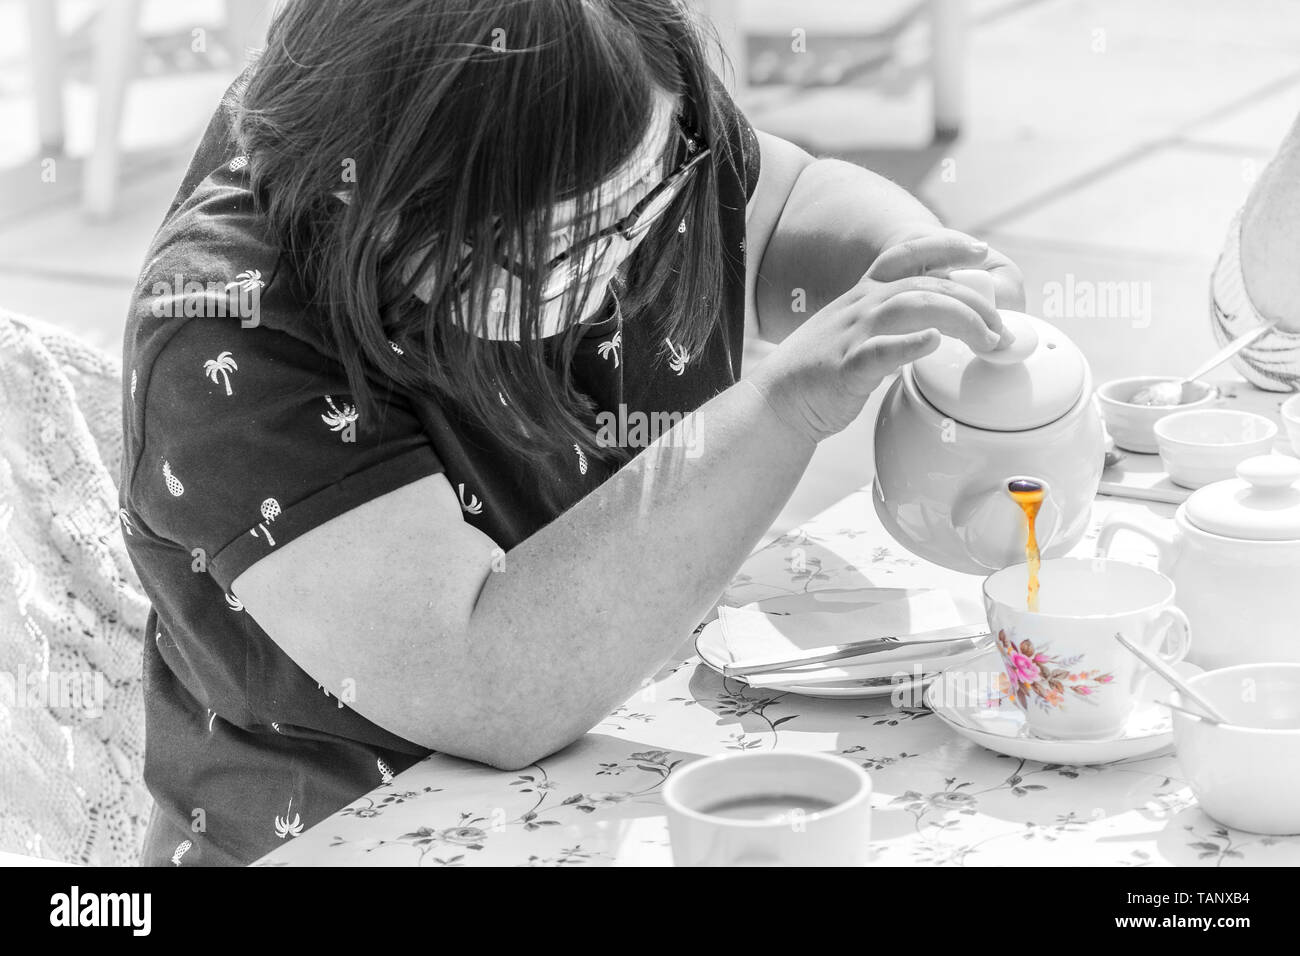 Mädchen mit Down-syndrom Leben genießen und gießen Sie eine Tasse Tee. Stockfoto